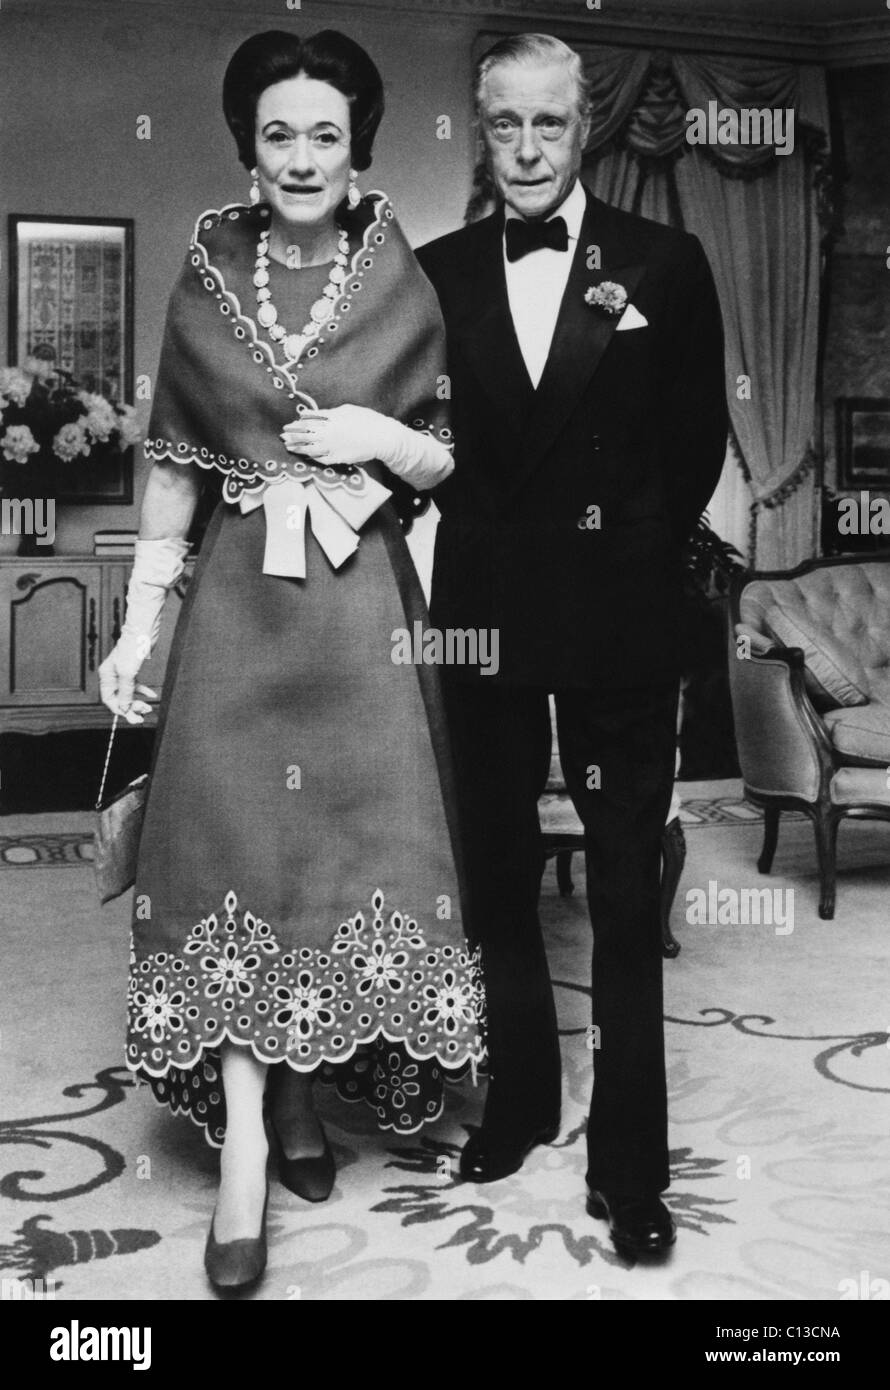 La duchessa di Windsor Wallis Simpson e Prince Edward, duca di Windsor, risalente alla fine degli anni sessanta. Foto Stock